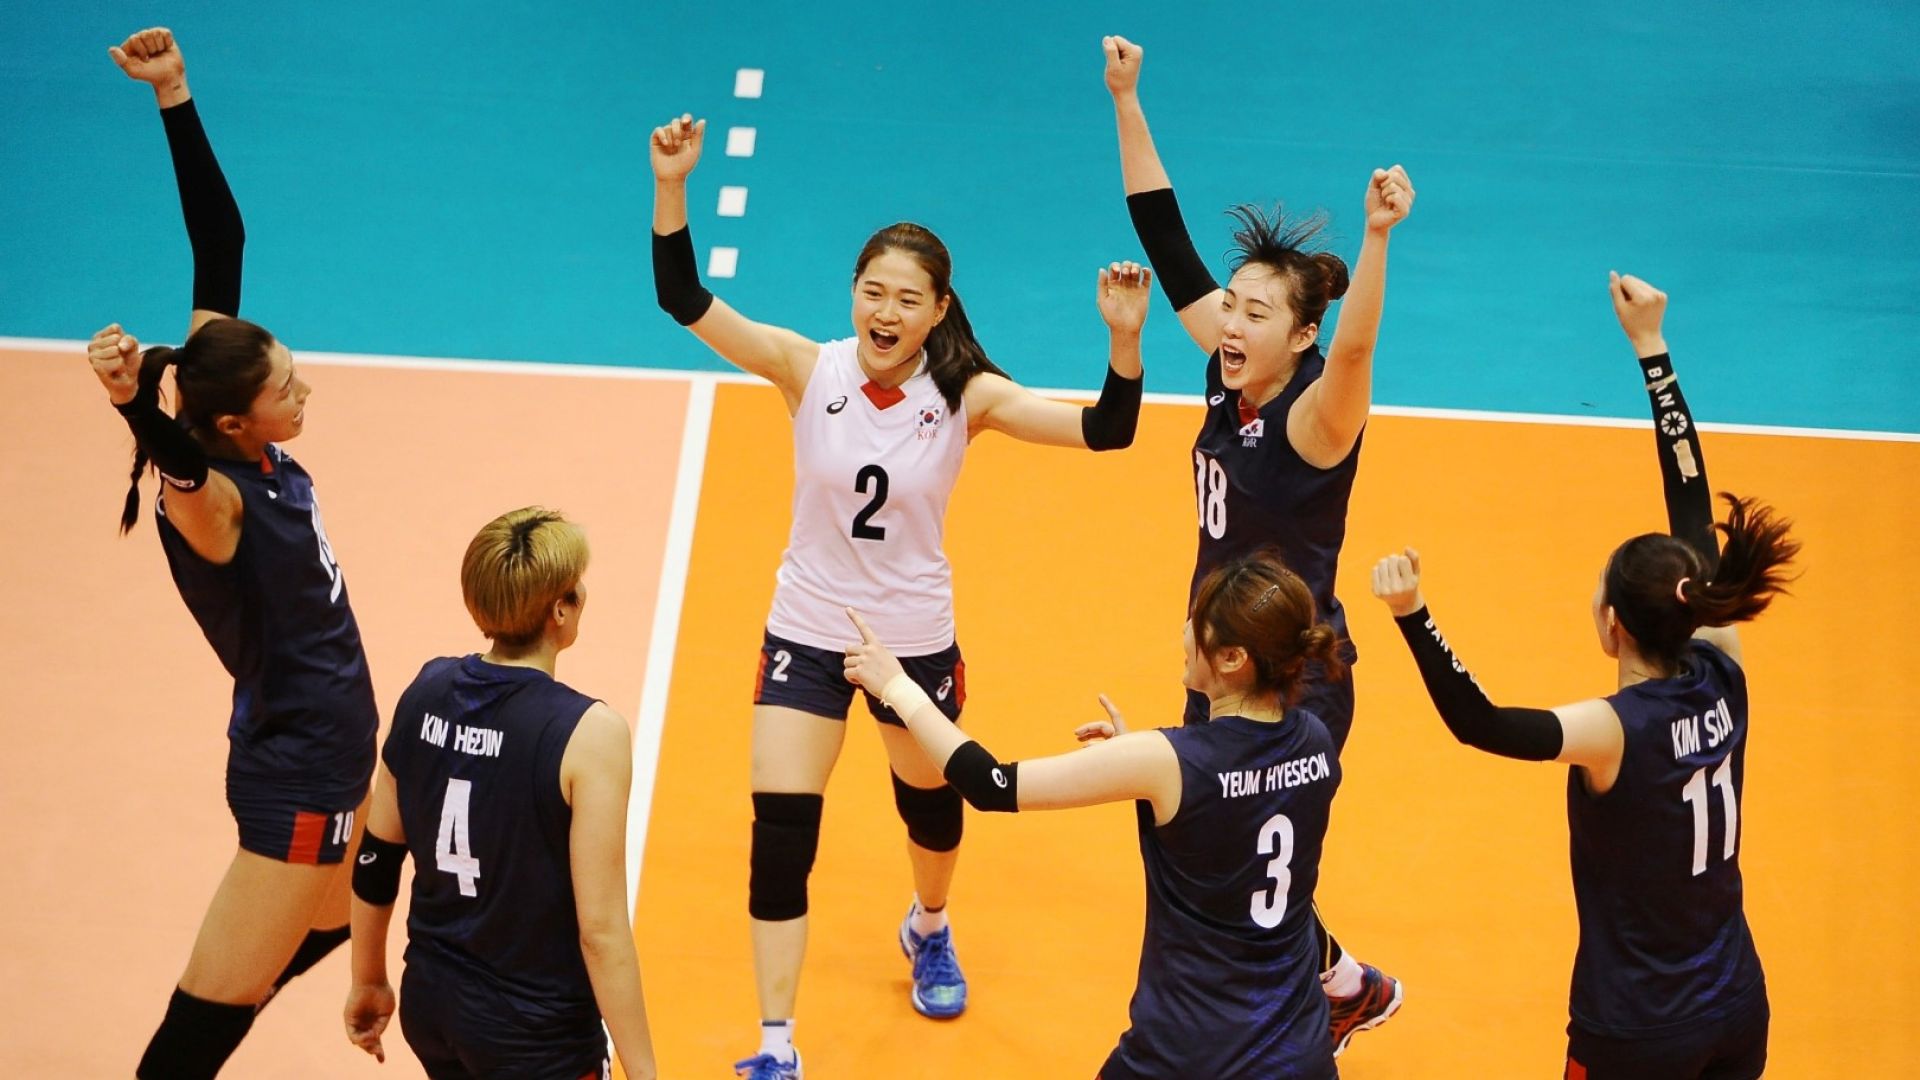 Нов скандал в Корея - две волейболни звезди са извадени от спорта за тормоз над ученици